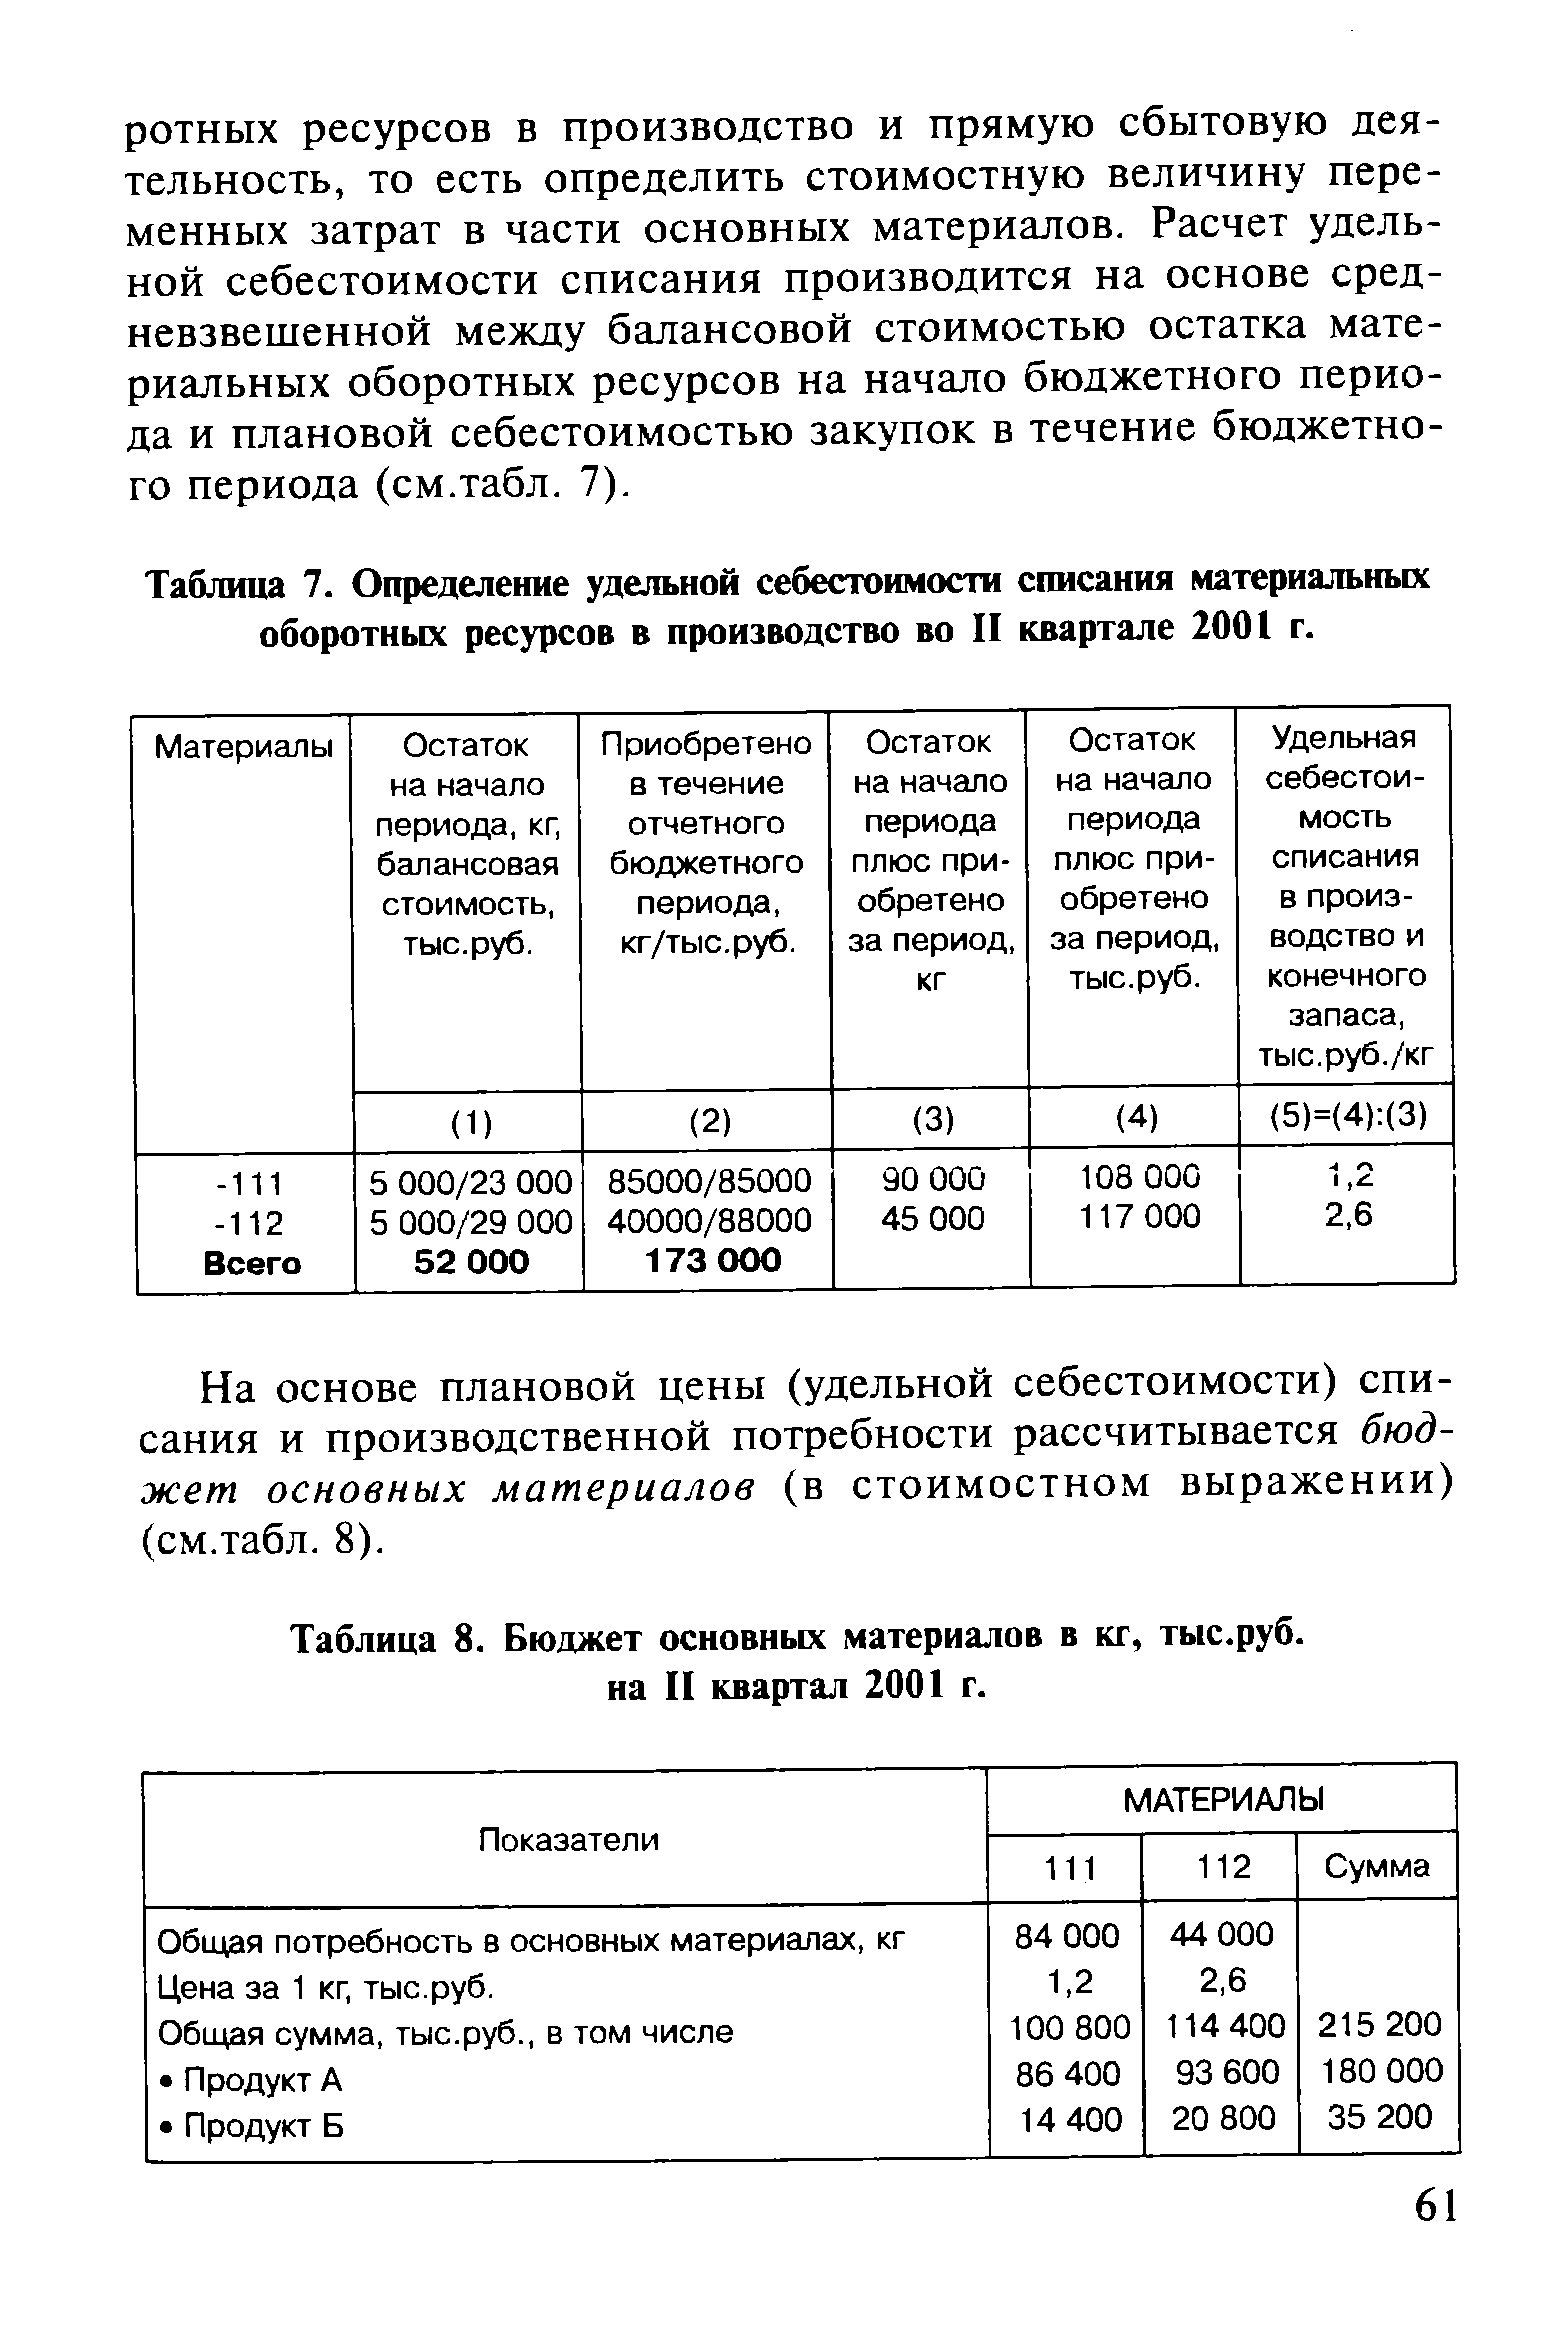 Таблица 8. Бюджет основных материалов в кг, тыс.руб. на II квартал 2001 г.
